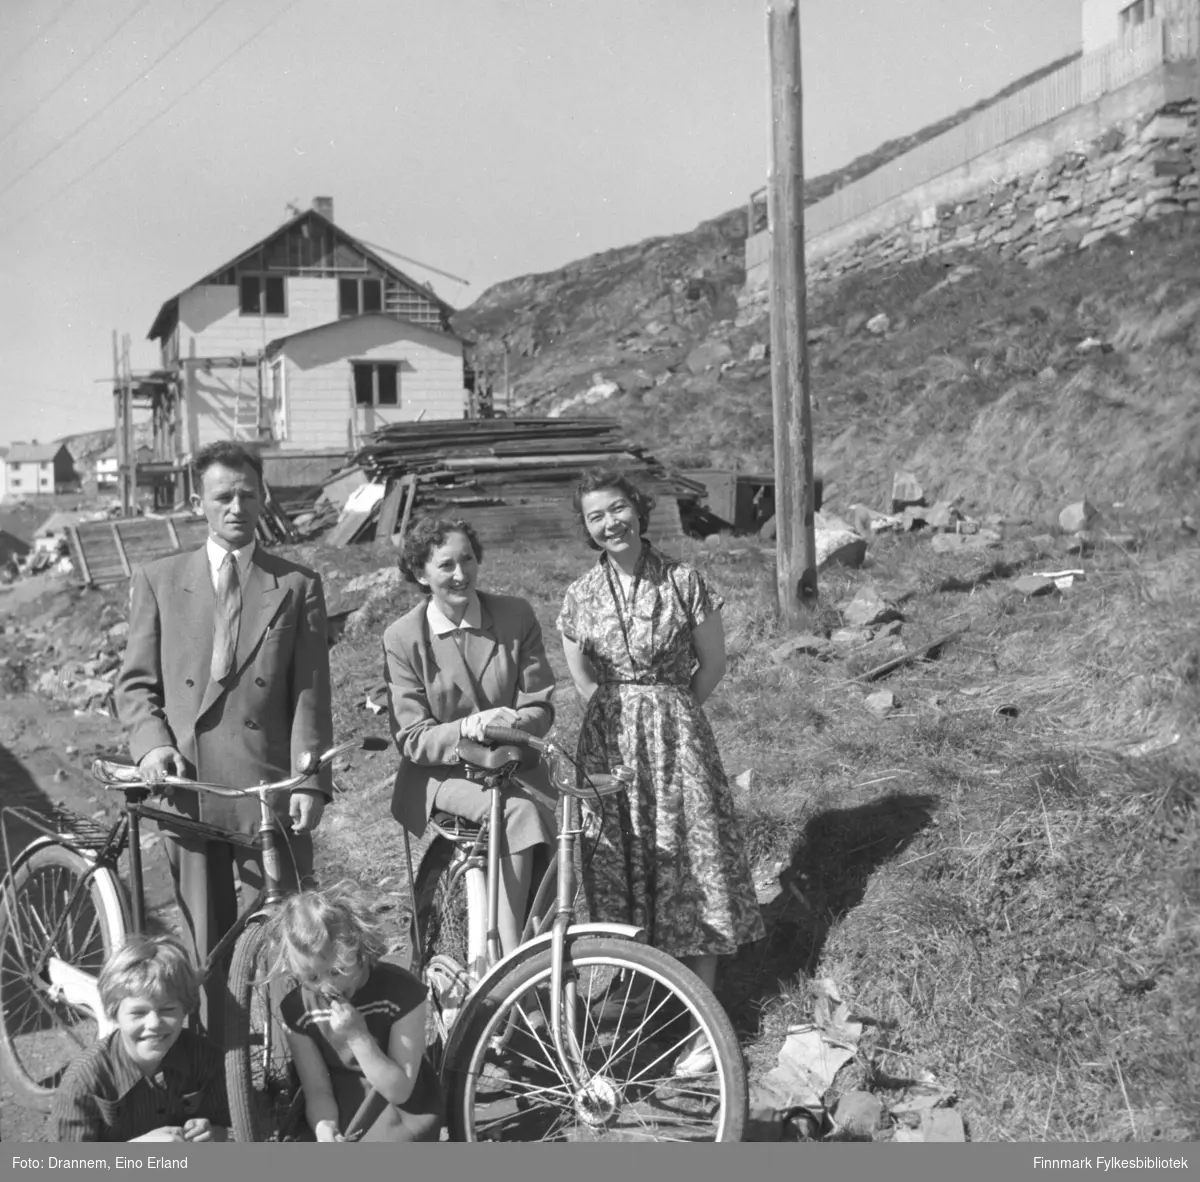 Gruppebilde av smilende mennesker fotografert på veien i Hammerfest. I bakgrunnen ser man et gjenreisningshus under bygging. Barna på bildet heter Vigdis Hansen og Turid Drannem, paret med sykler er ukjente og helt til høyre er Turid Drannem